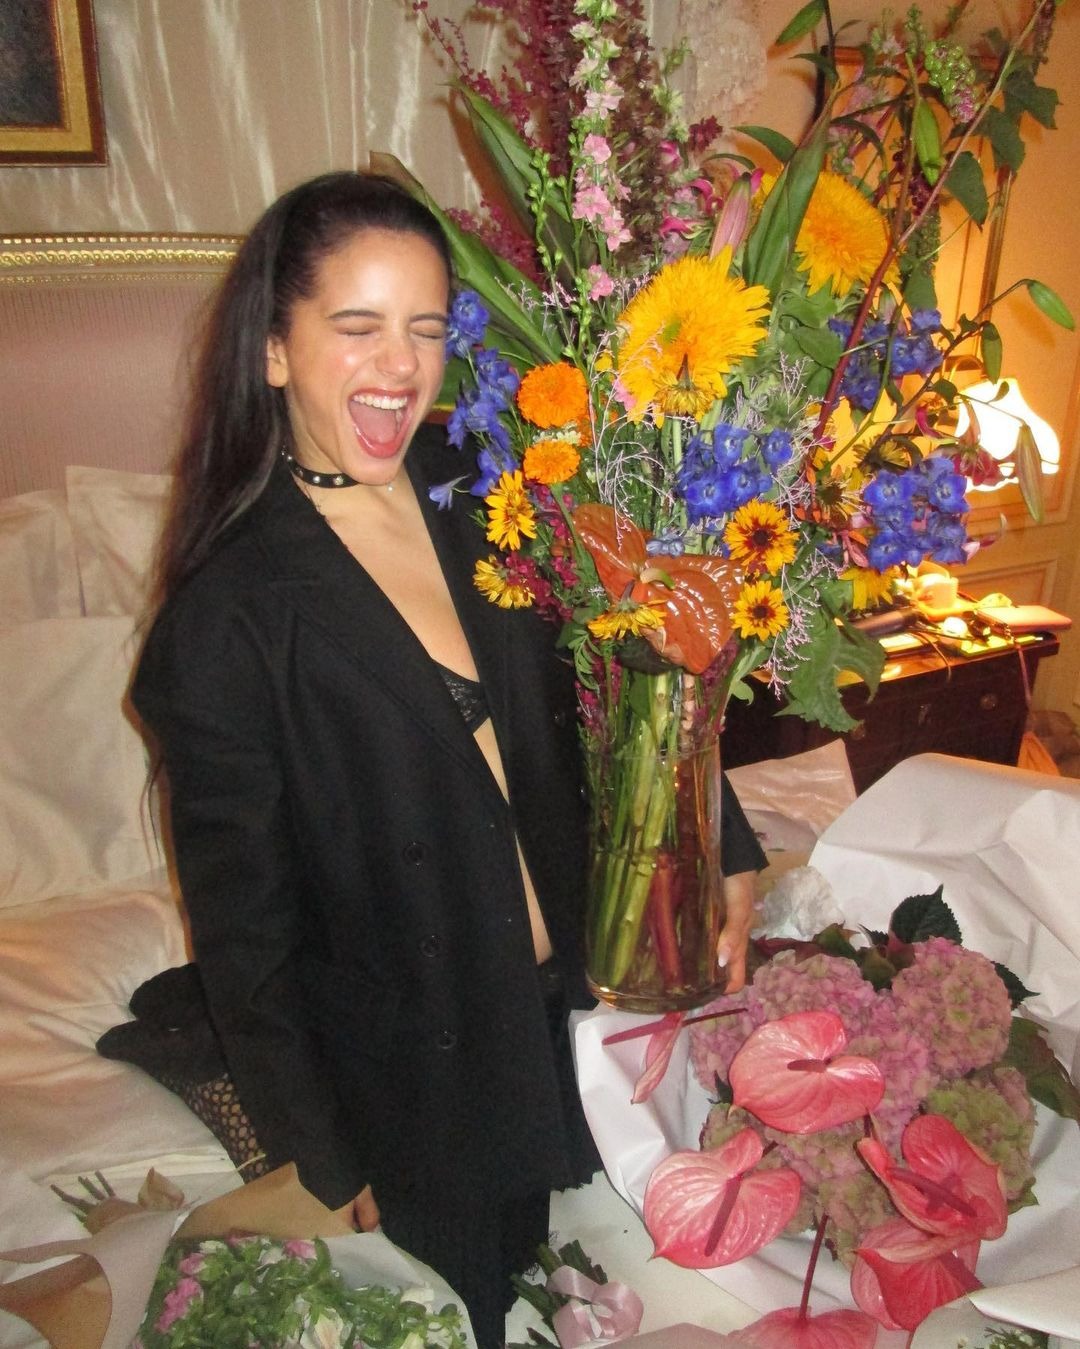 Rosalía posando feliz junto a las flores que abarrotaron su habitación de Hotel/ Foto: Instagram